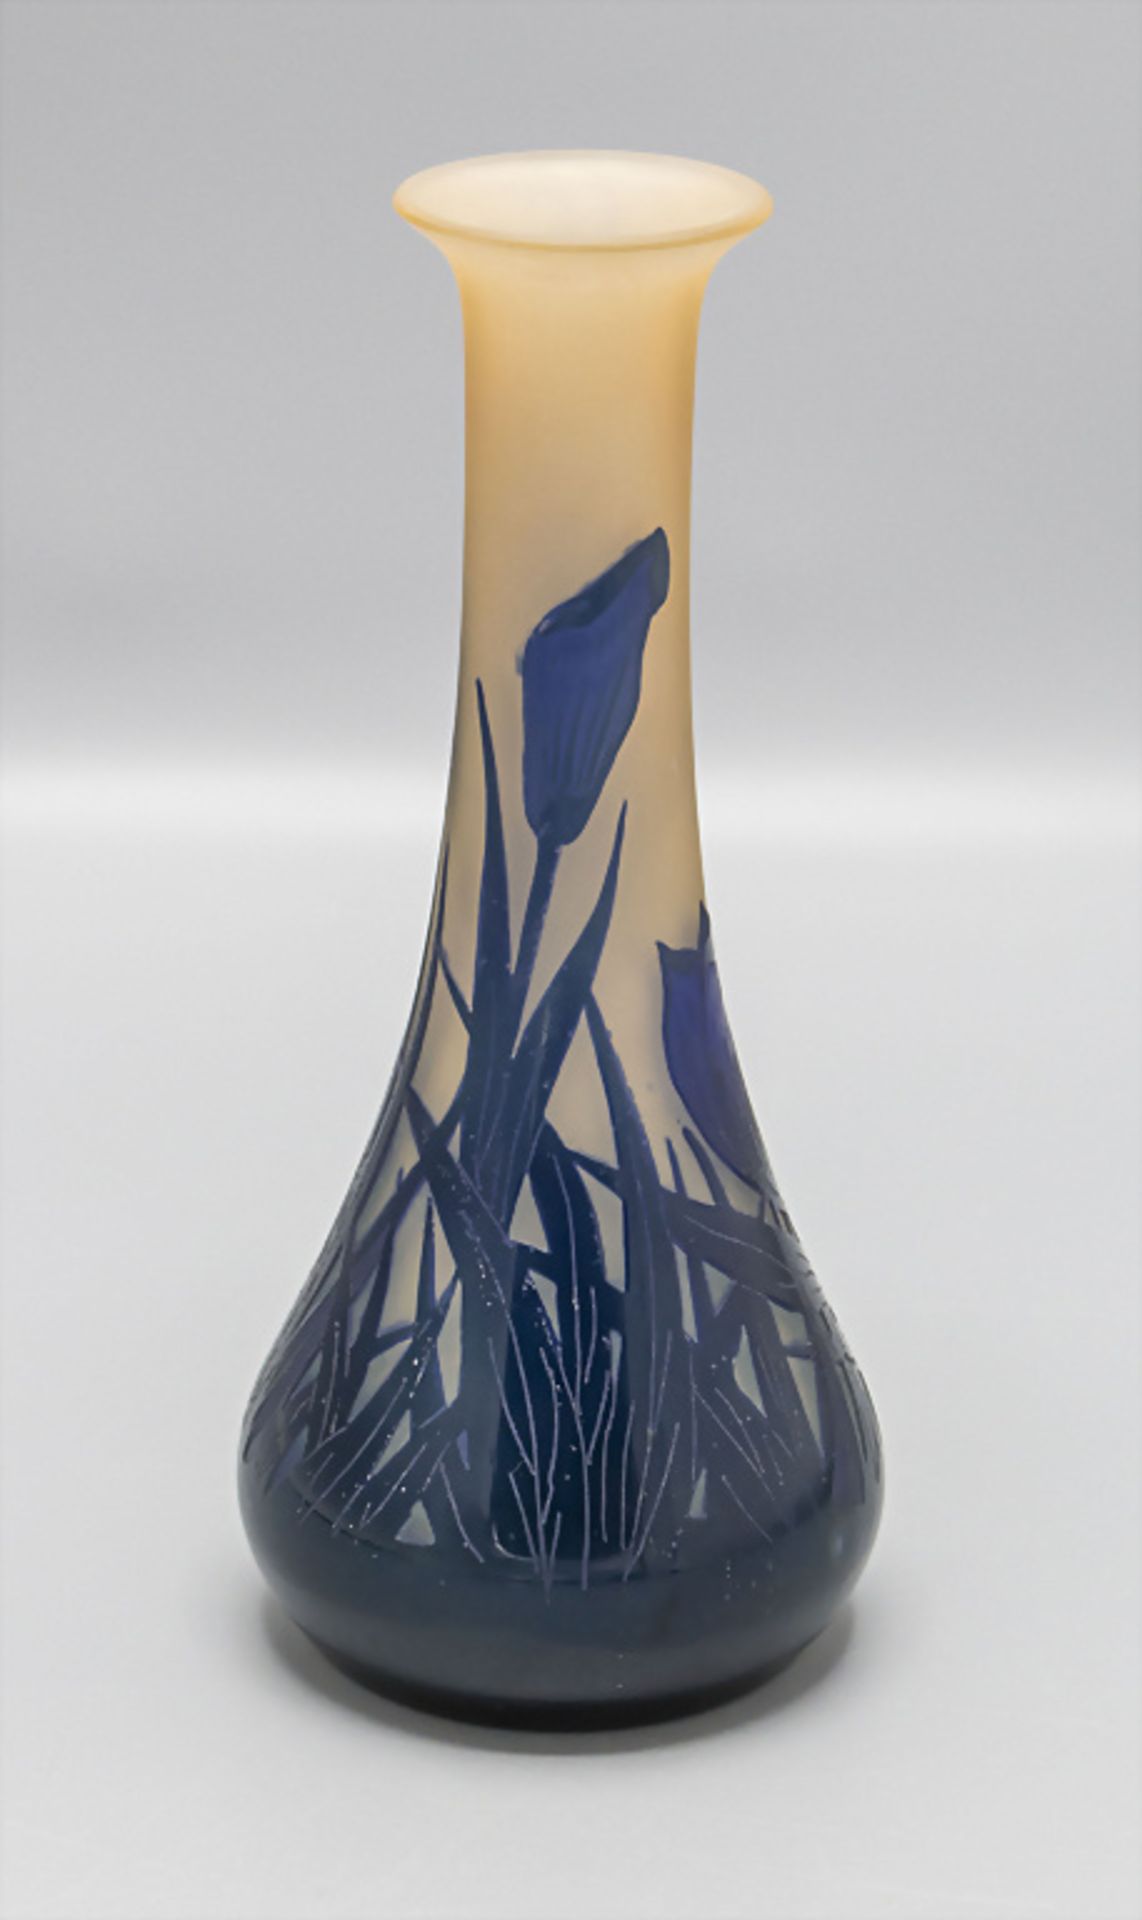 Jugendstil Vase 'Frühblüher' / An Art Noveau vase 'Early bloomers', Georges Raspiller, ...